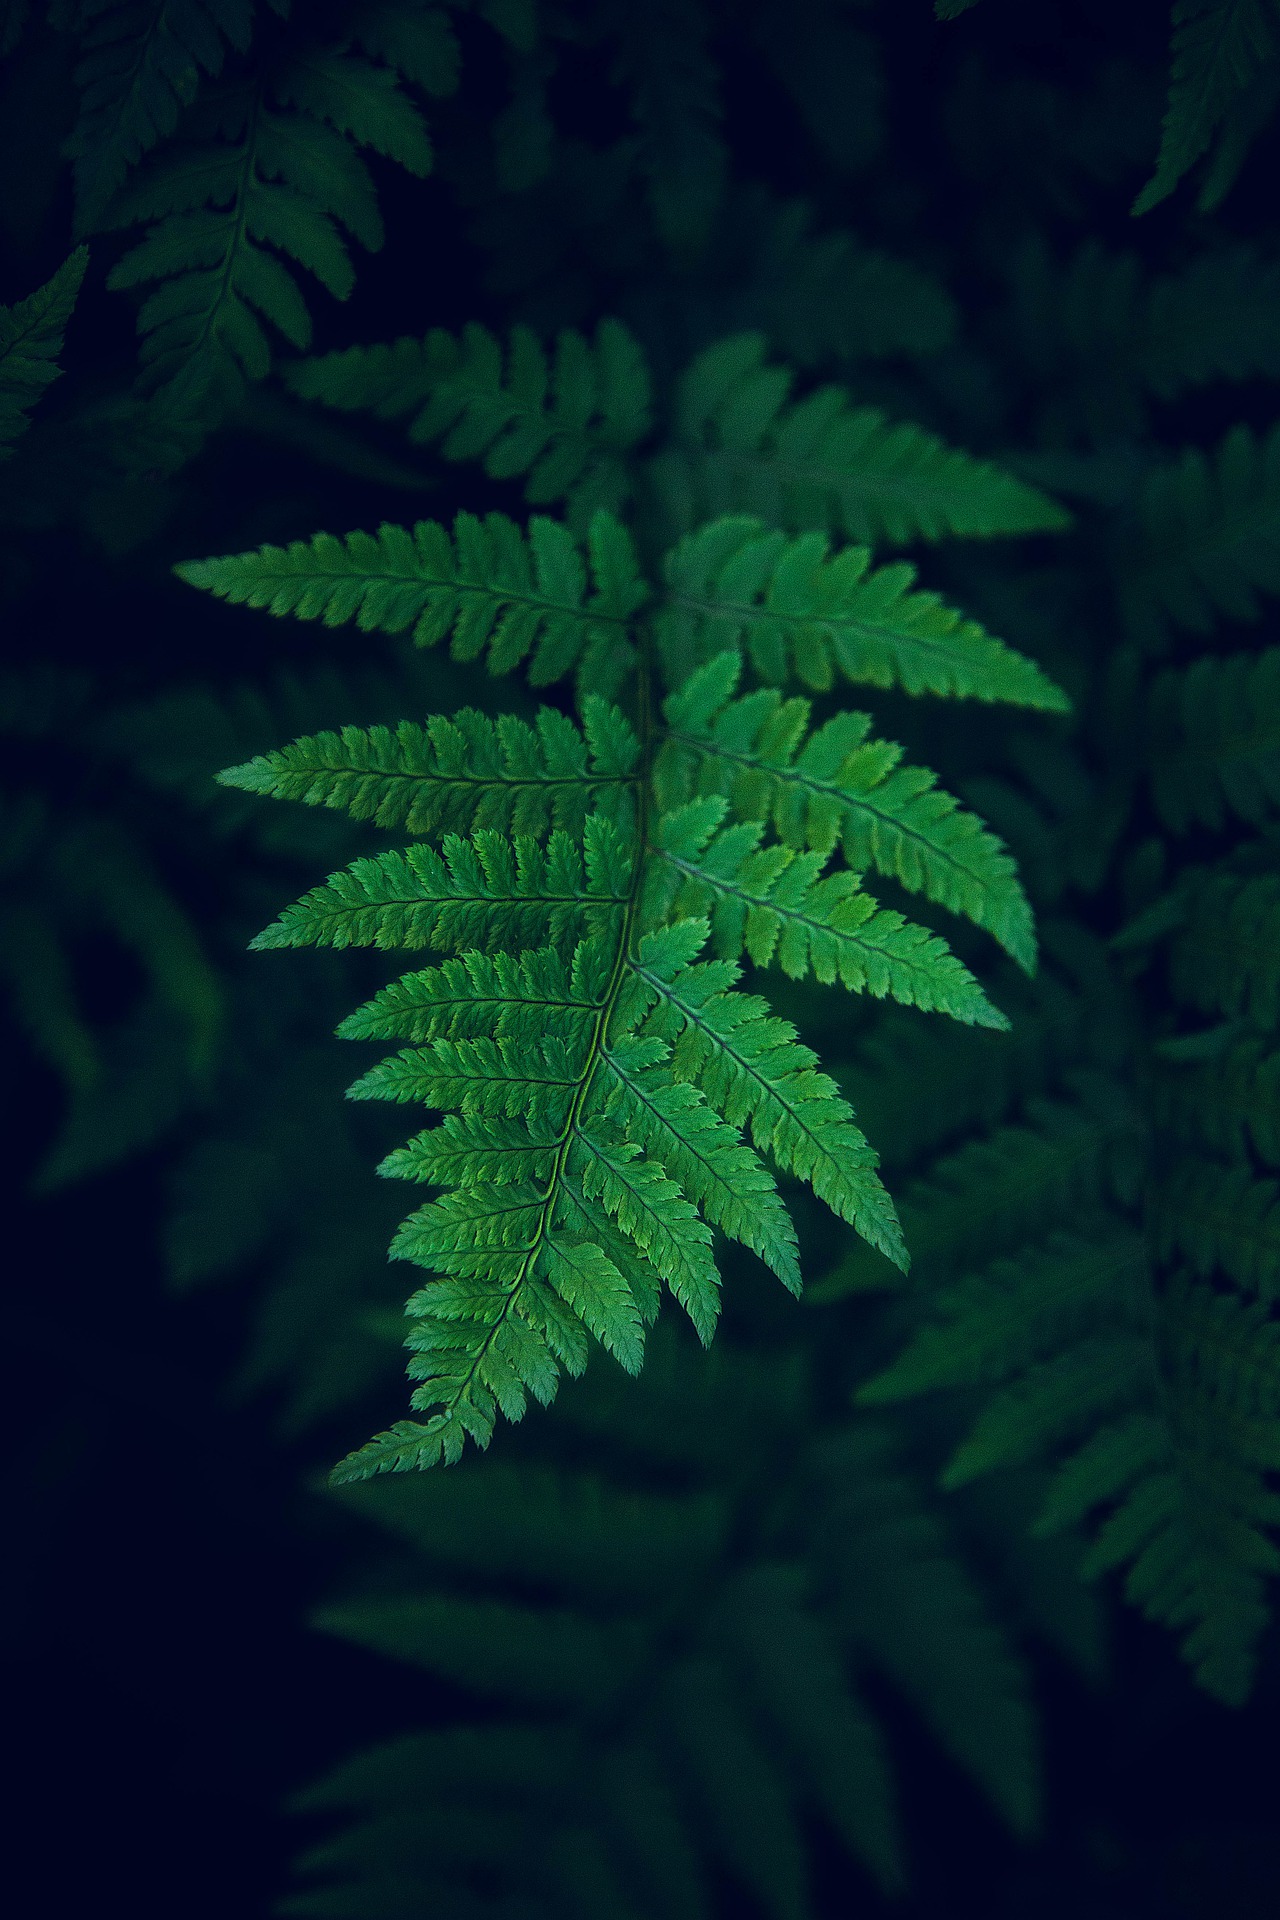 蕨类植物的嫩叶 唯美森系大自然植物手机壁纸图片 绿叶